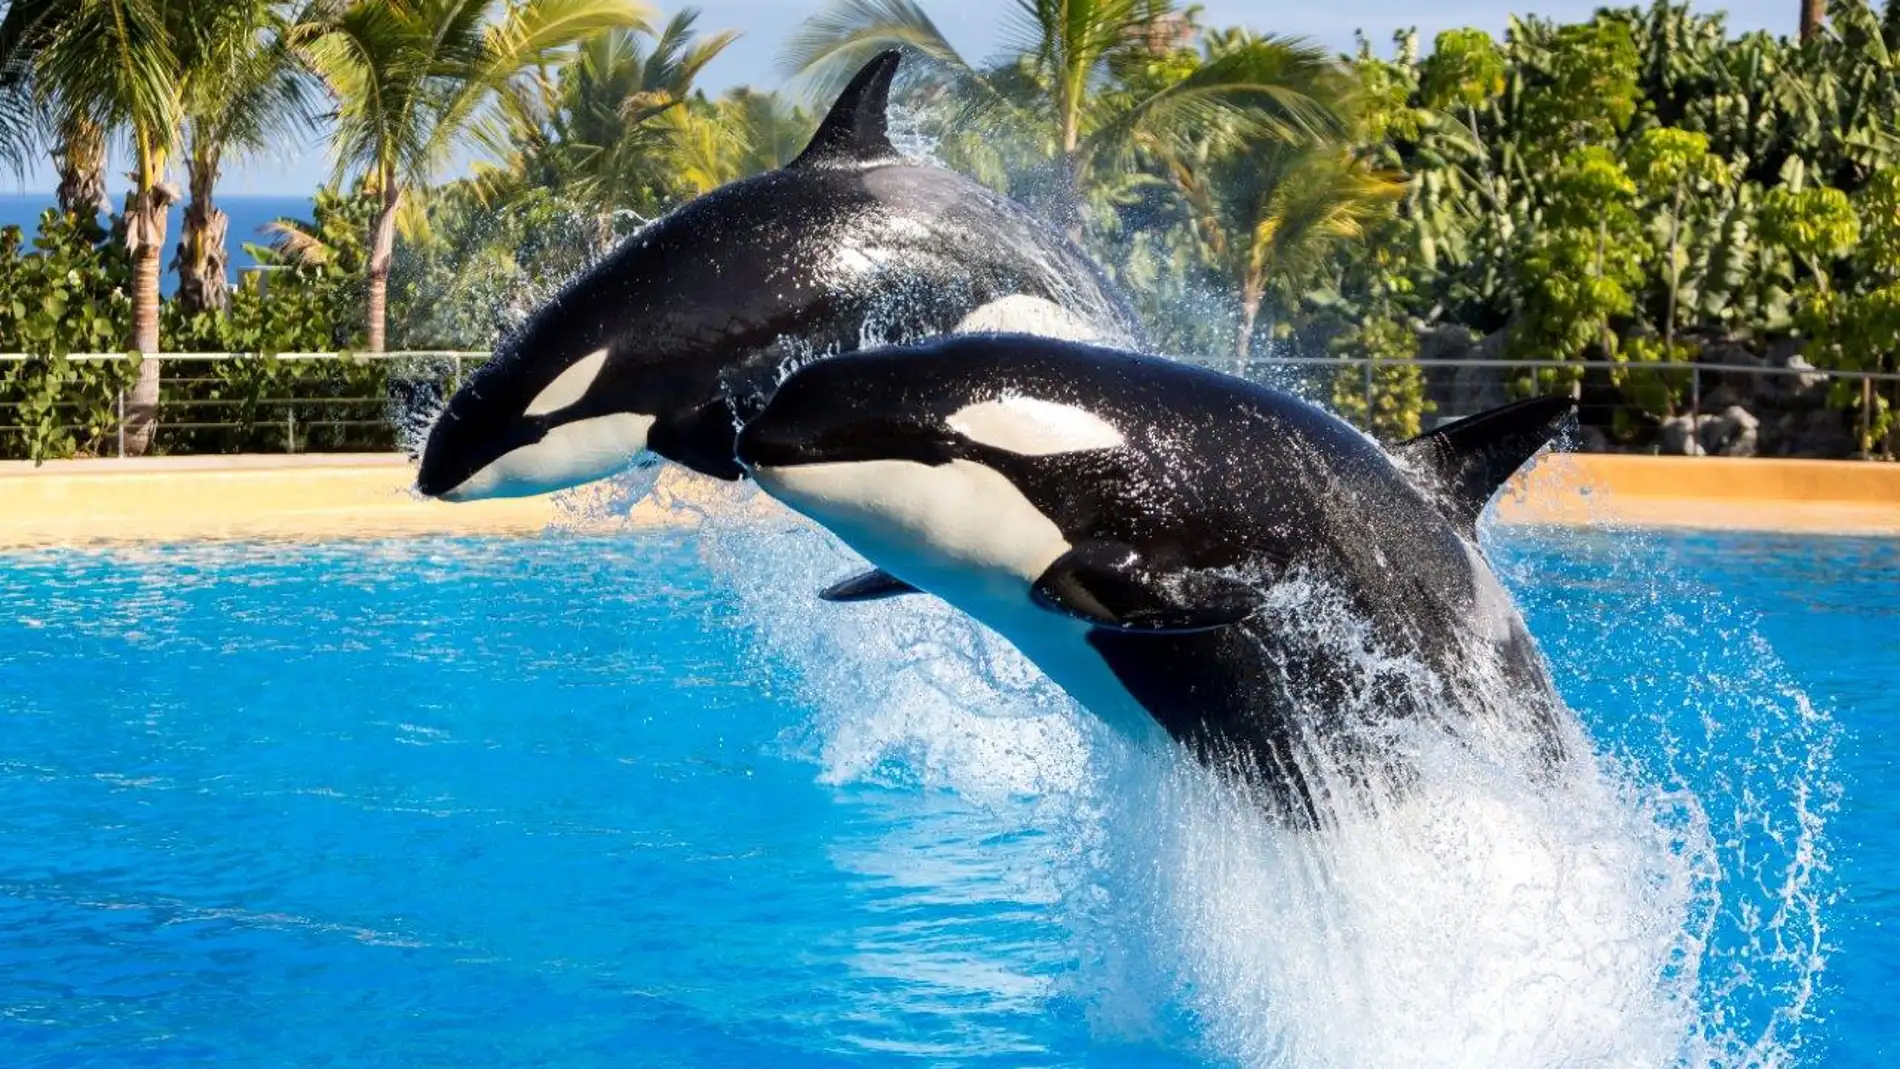 Las orcas asesinas son en realidad pacificas y sensibles